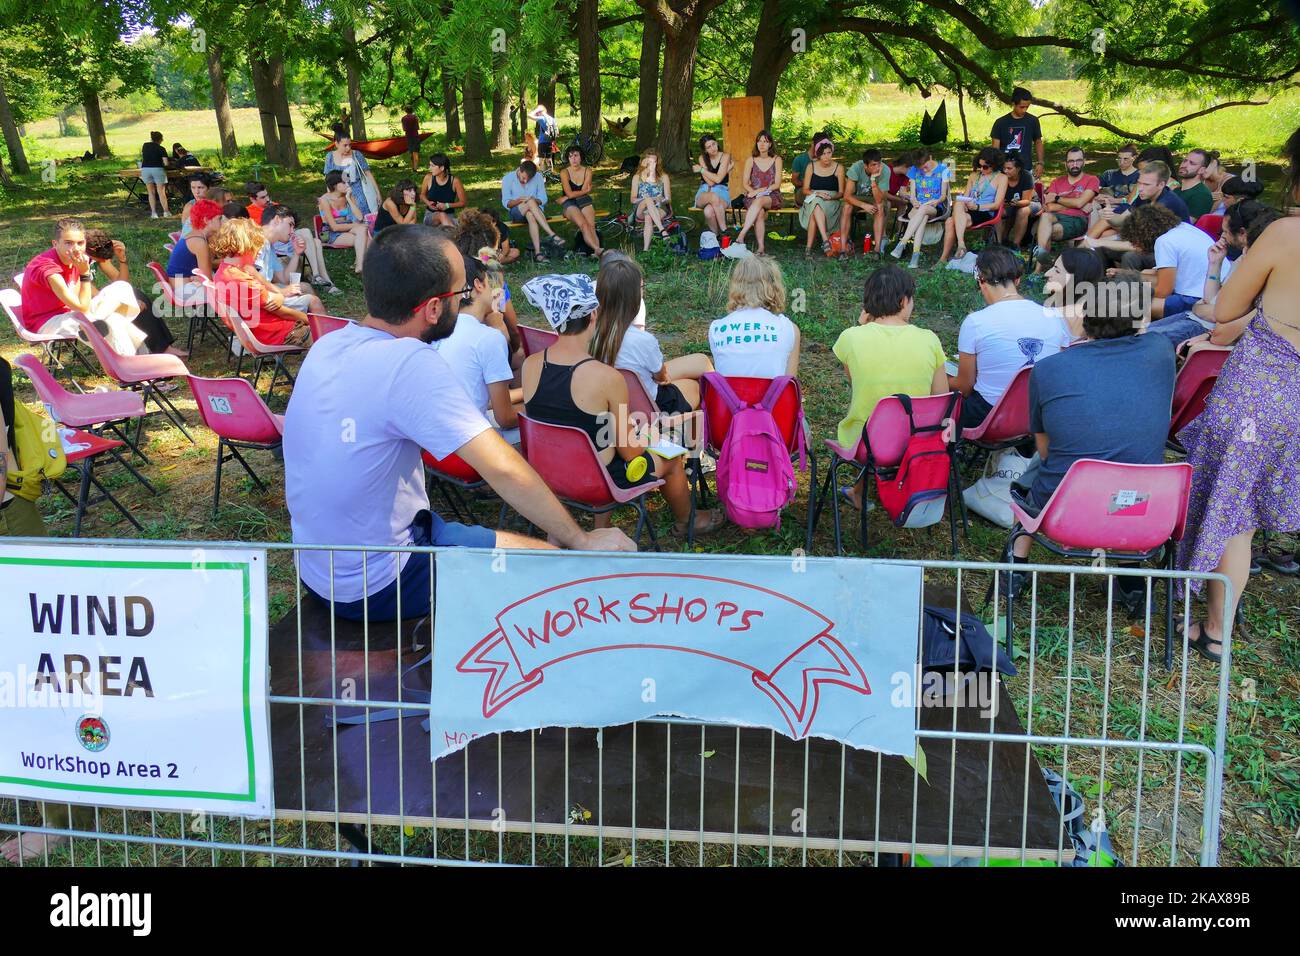 Gli attivisti si riunono al parco urbano di Colletta per il campo sociale internazionale sul clima di Torino Foto Stock